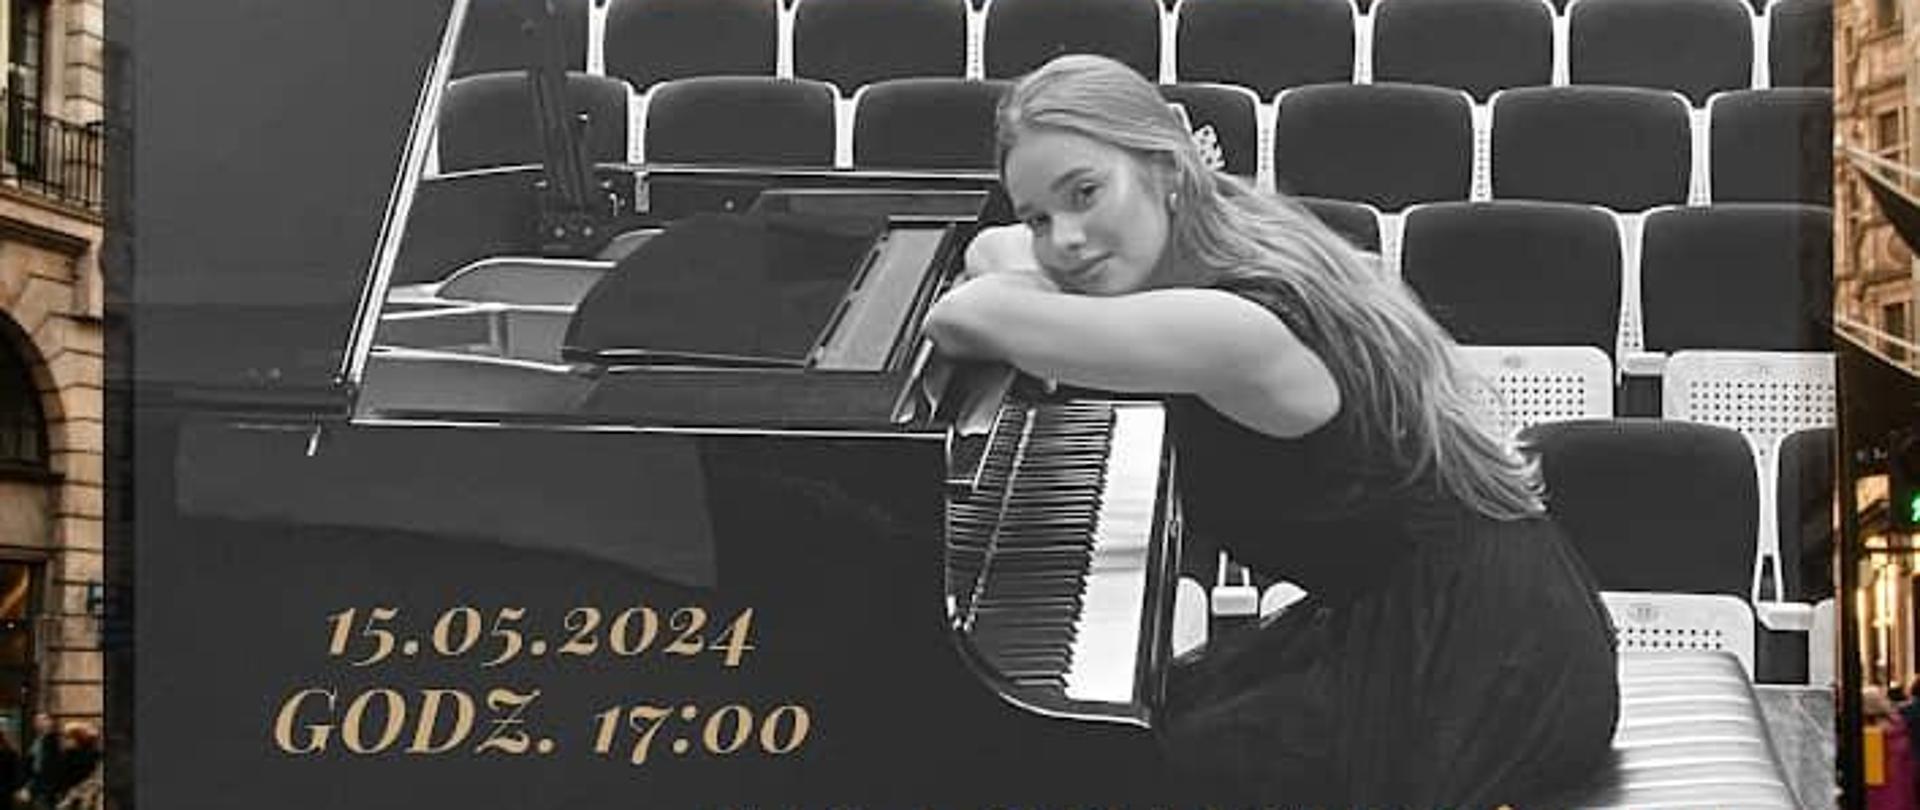 Recital Dyplomowy Marii Wieliczko z klasy fortepianu mgr Anety Kołbasy-Chrobak, który odbędzie się 15 maja 2024 o godzinie 17:00 w Sali Koncertowej PSM Wadowice. Wstęp wolny